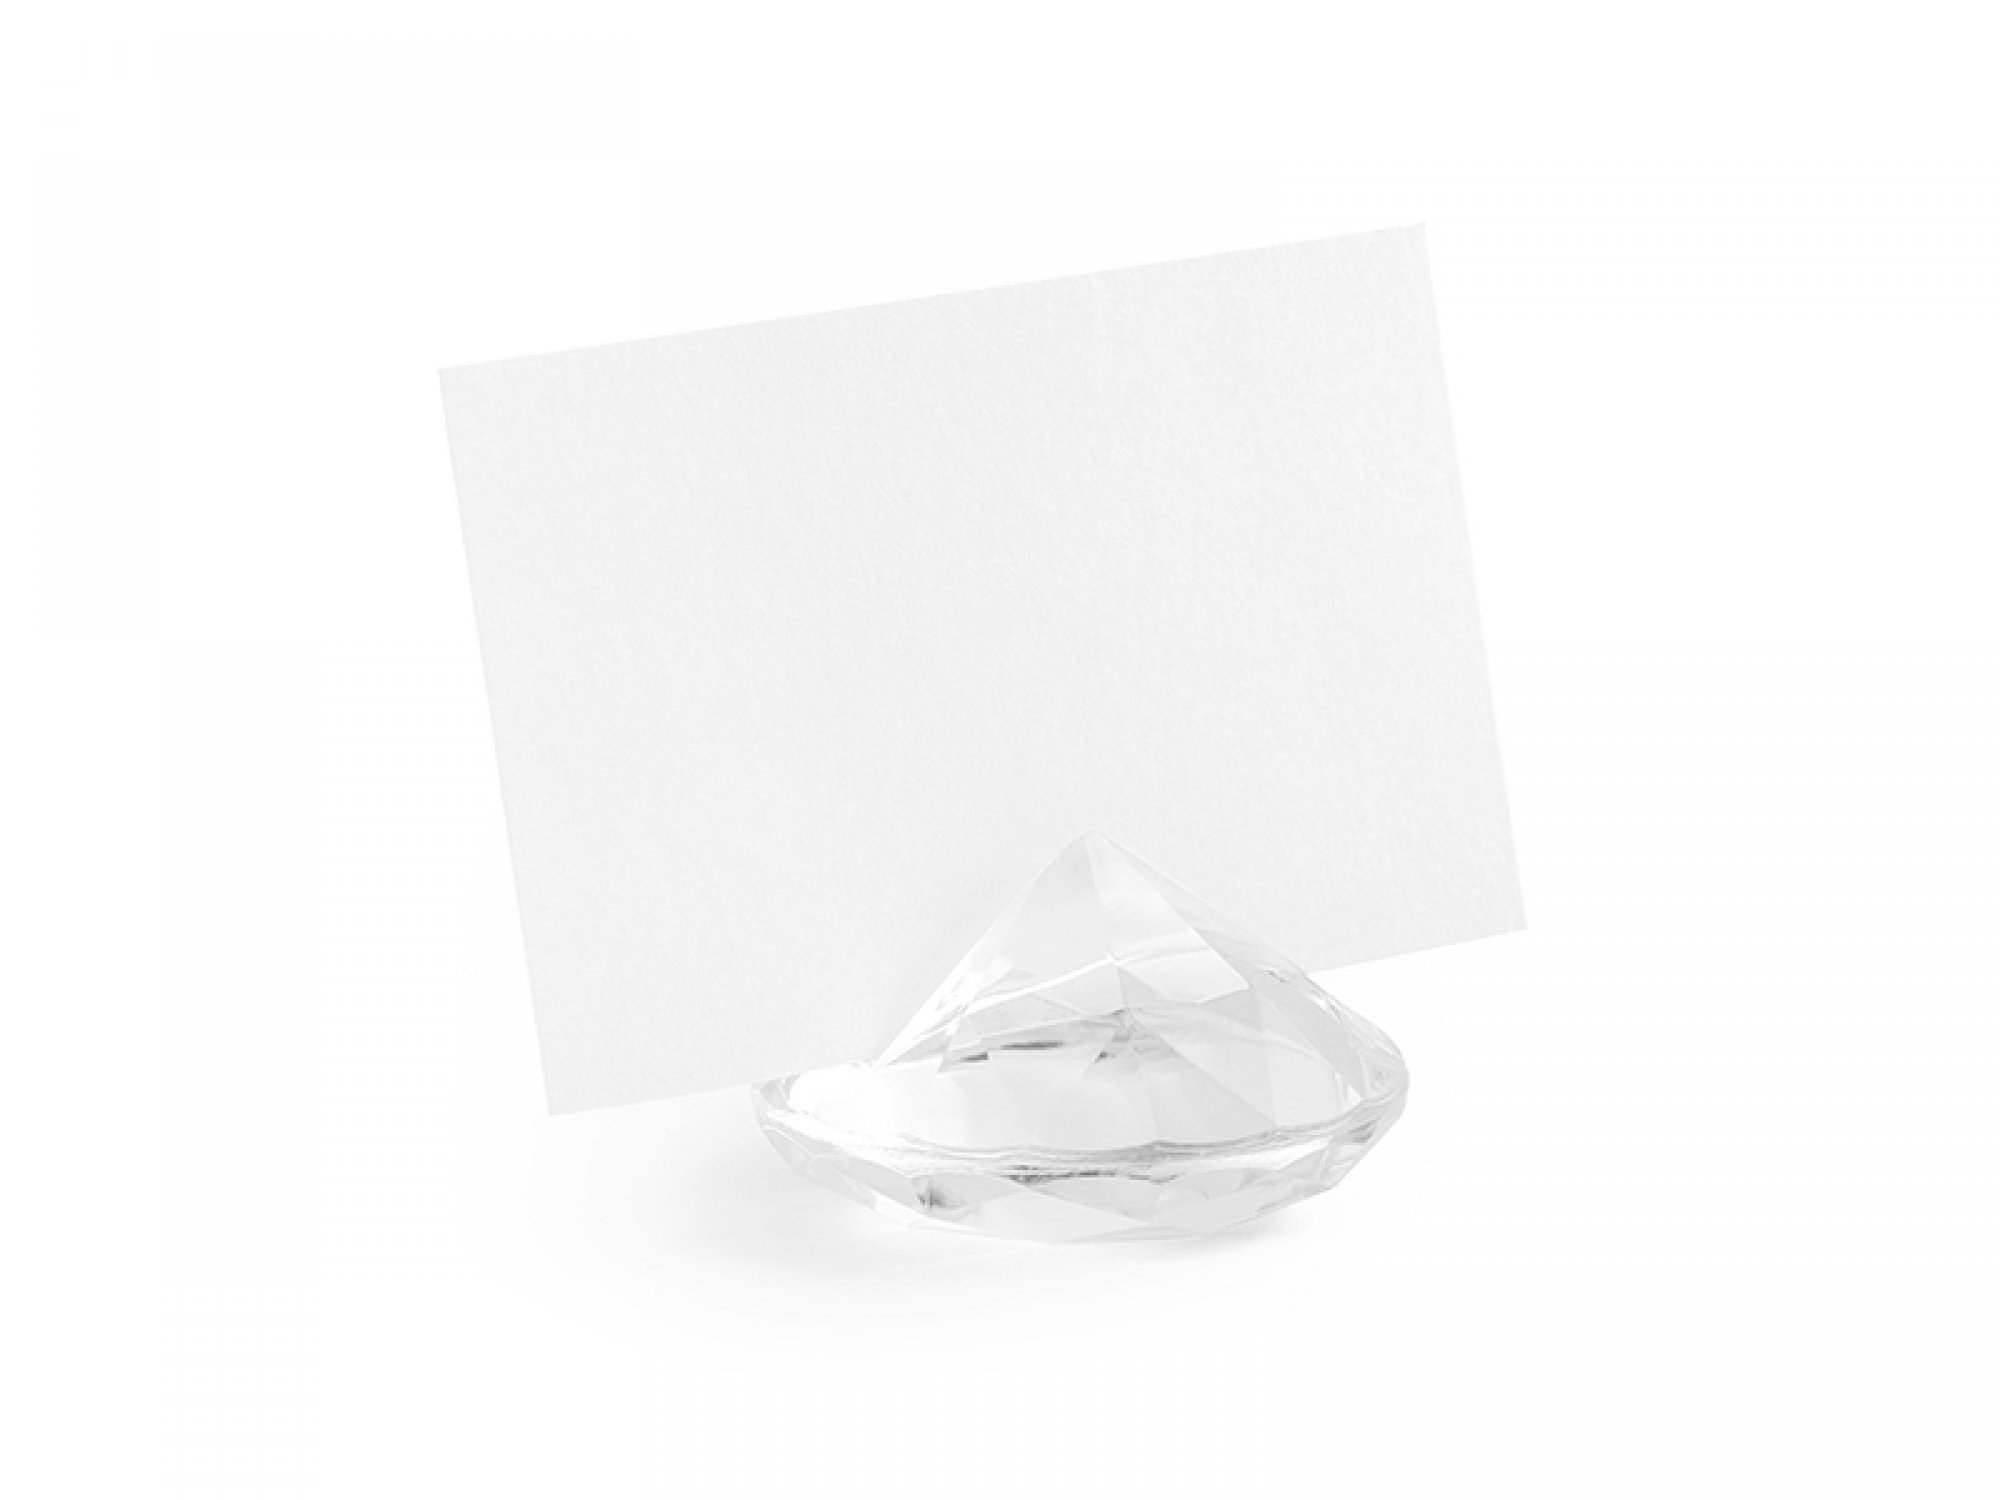 10 x Diamant Tischkartenhalter transparent farblos 40 mm Tischdeko Hochzeit incl. Tischkarte!!!